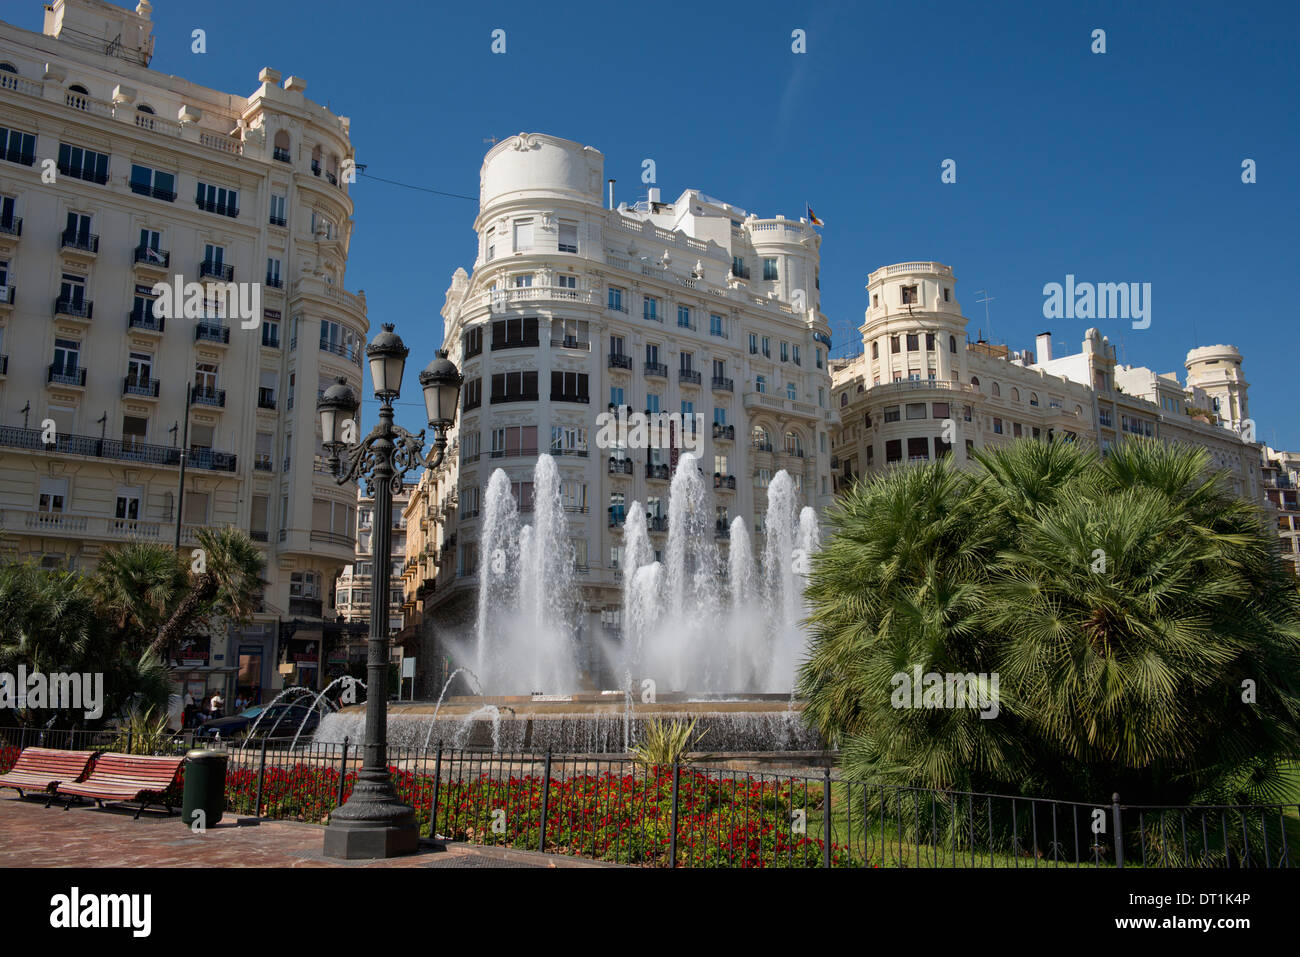 Ein Brunnen und die umliegenden Gebäude in Plaza Ayuntamiento (Rathausplatz) in Valencia, Valenciana, Spanien, Europa Stockfoto